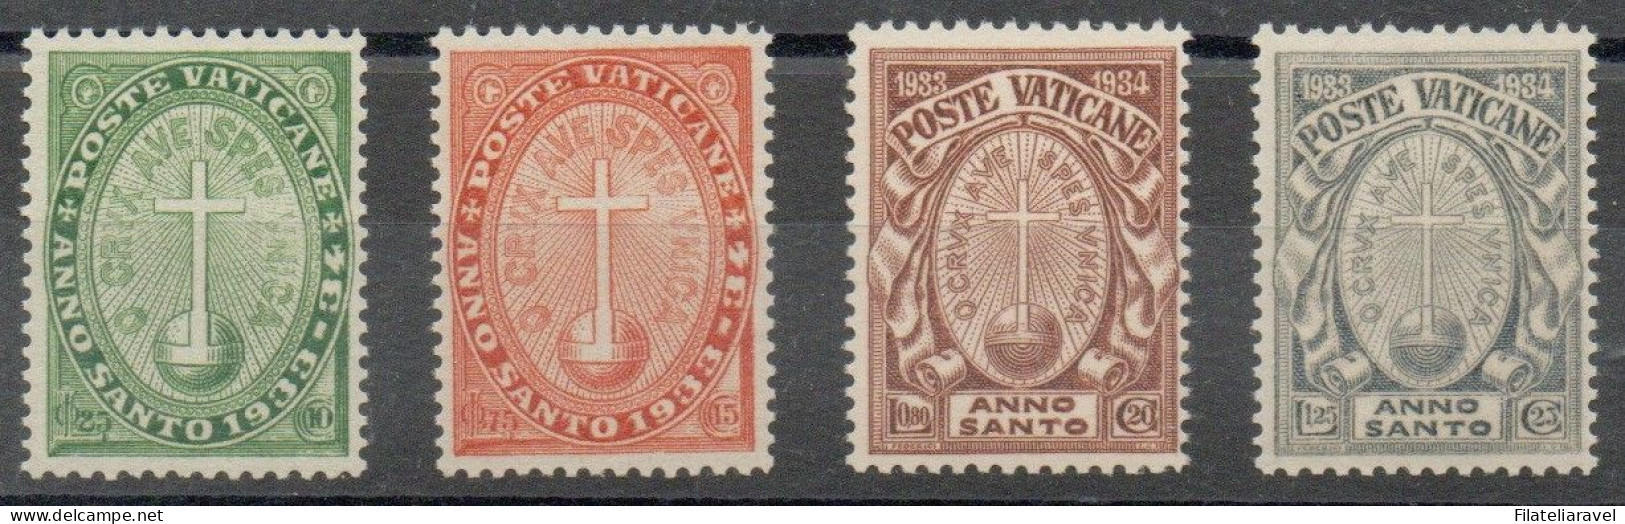 Vaticano - 1933 - "Anno Santo Straordinario", Serie Completa, 4 Valori, Gomma Integra, Catalogo 15/18 - Nuovi